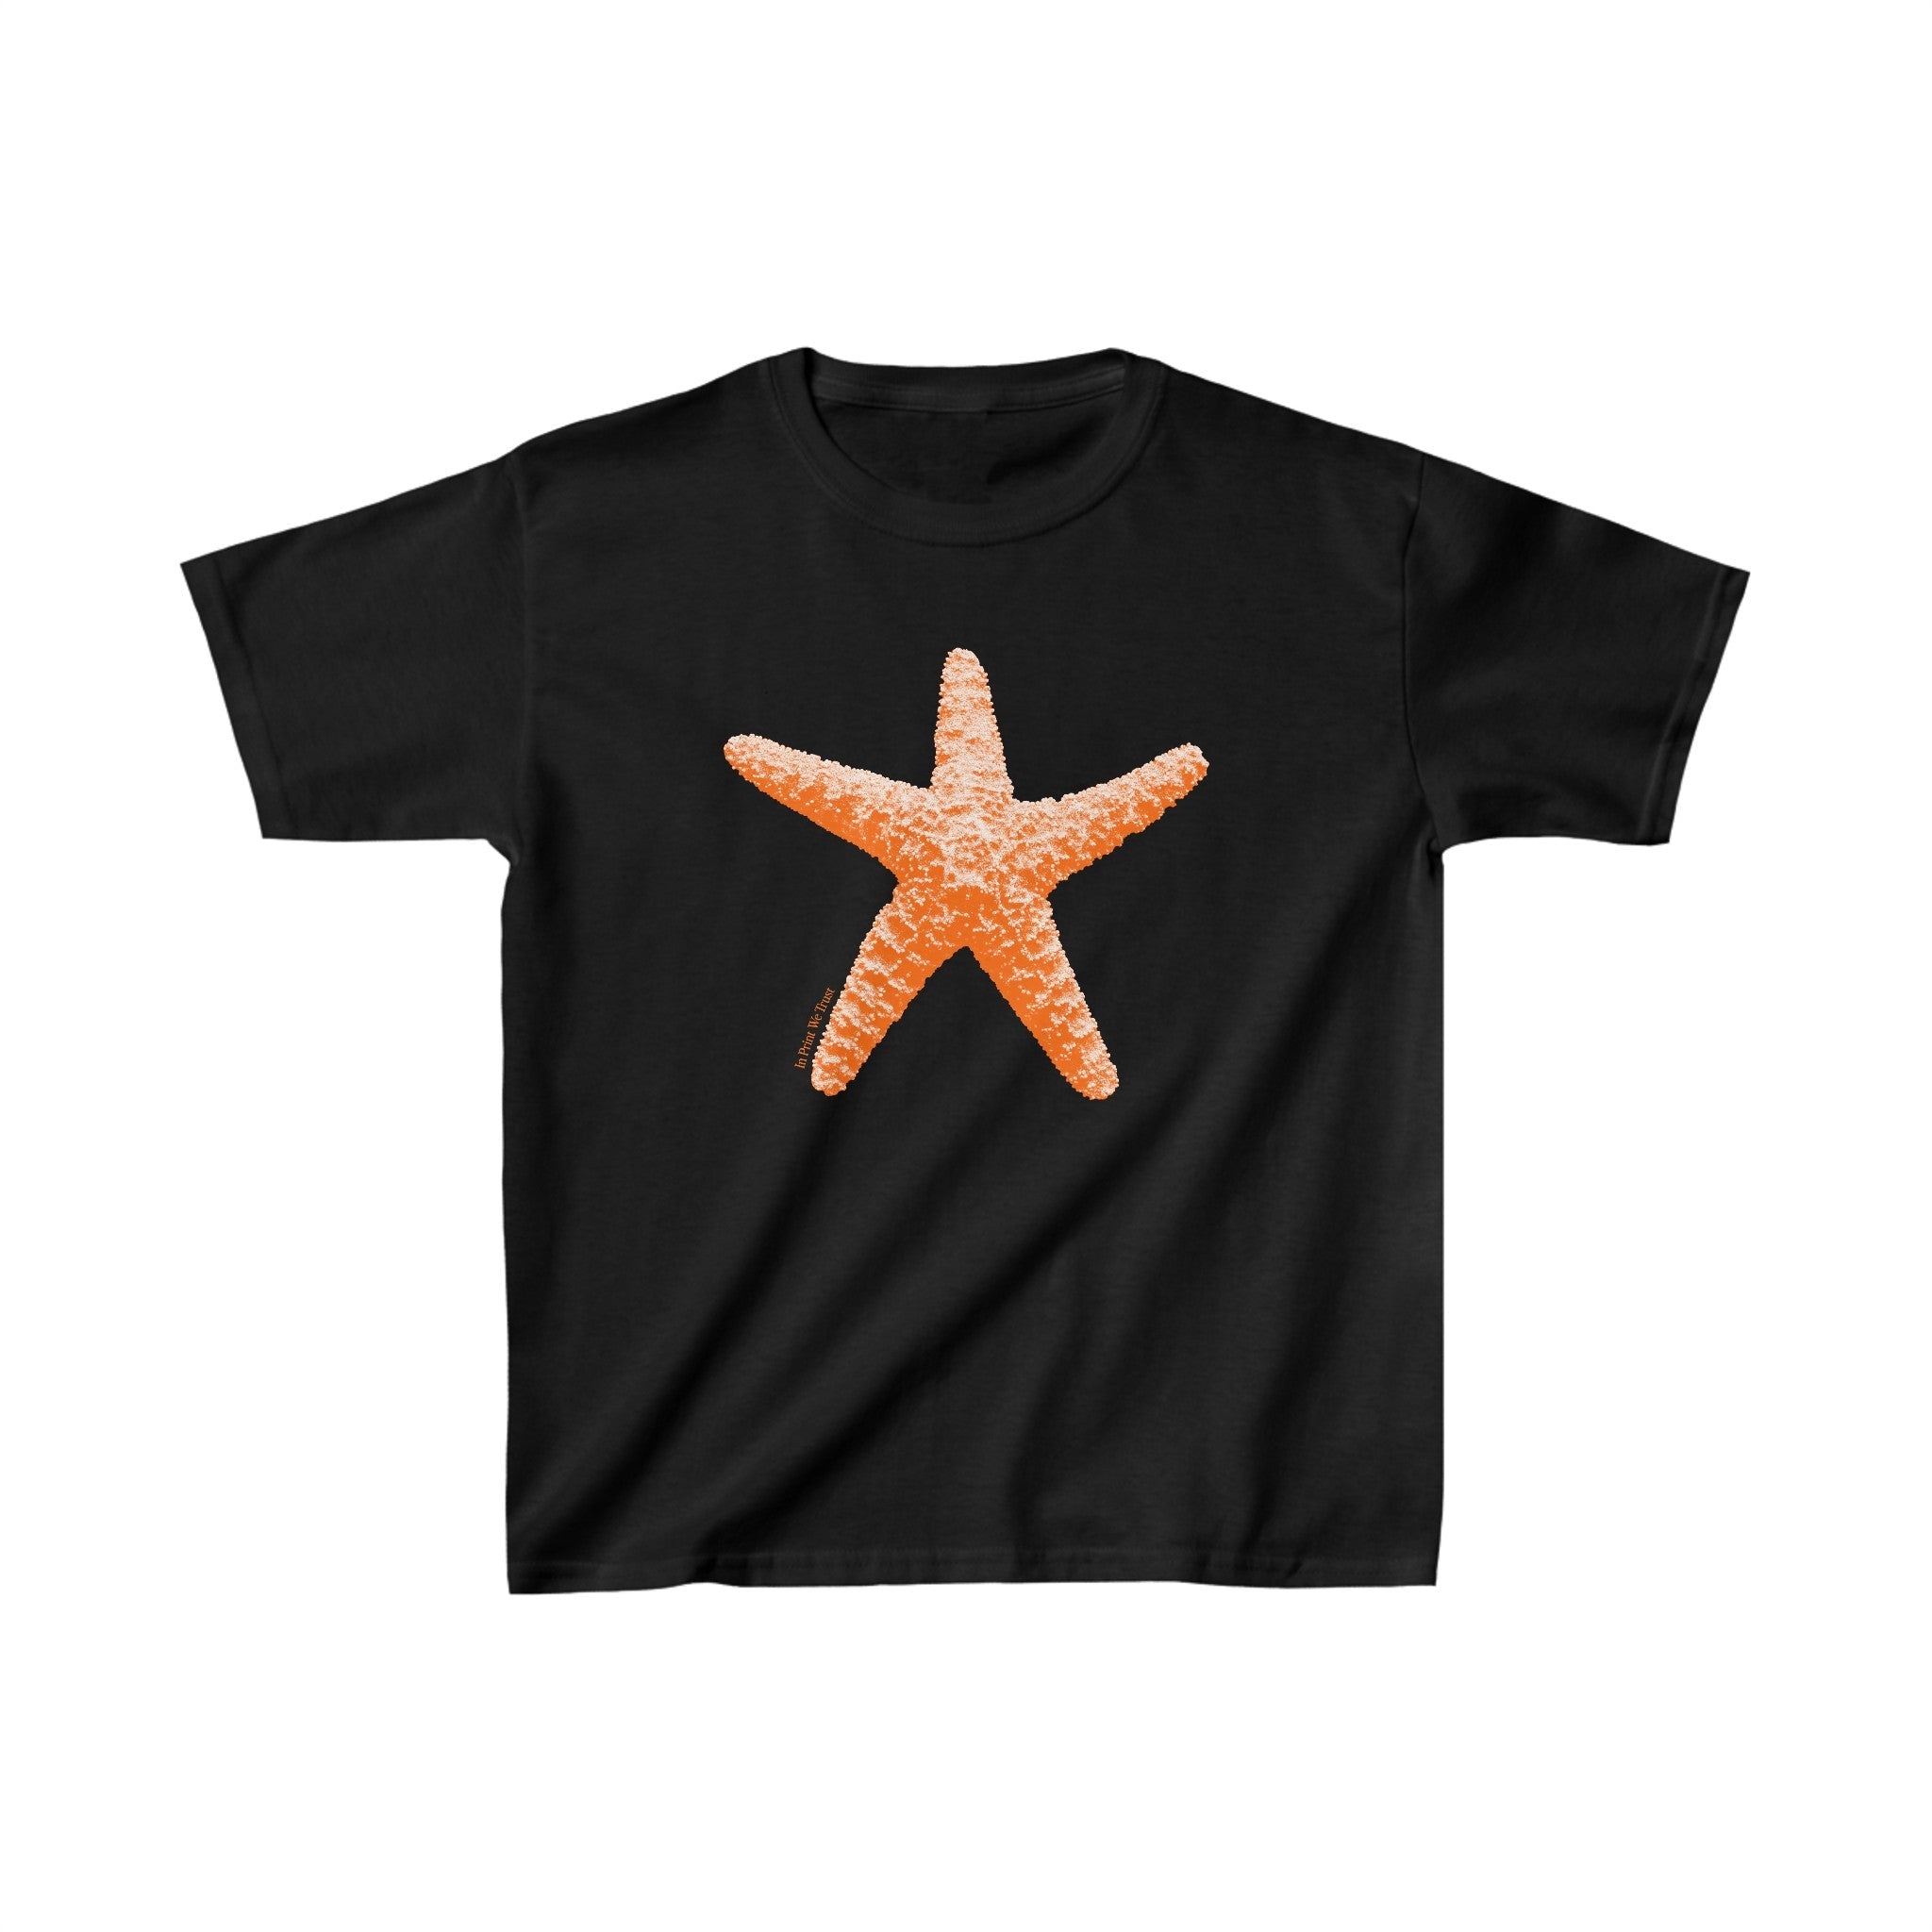 'Starfish' baby tee - In Print We Trust